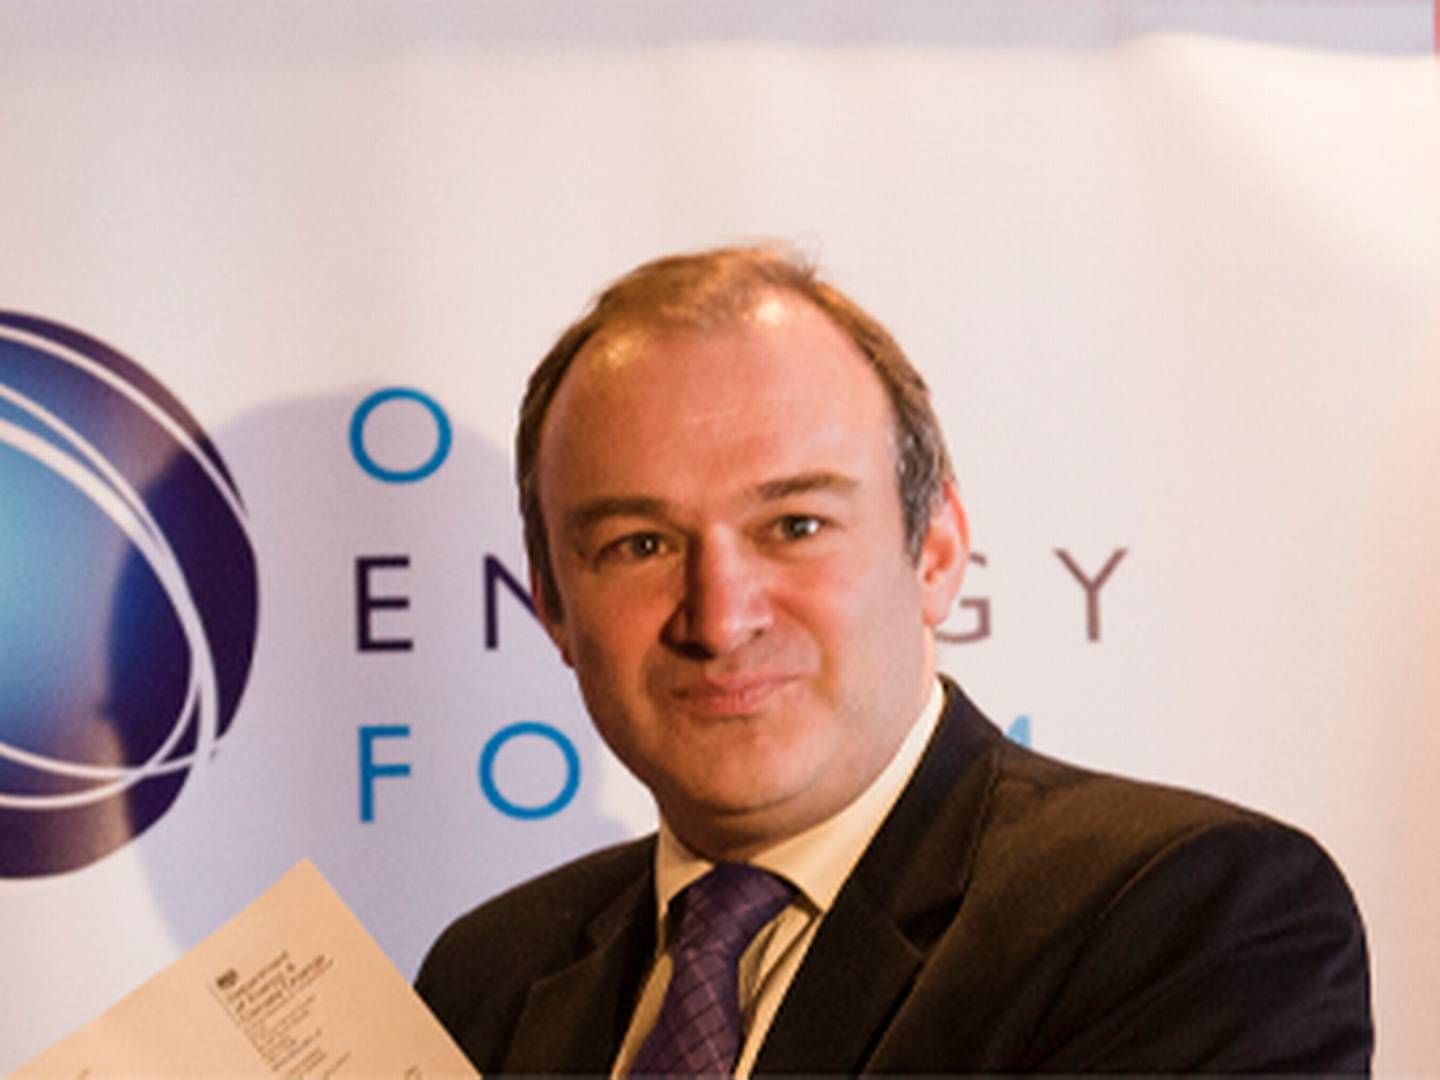 Den britiske energiminster, Ed Davey, går hårdt til angreb på energiselskaberne. | Foto: Statoil